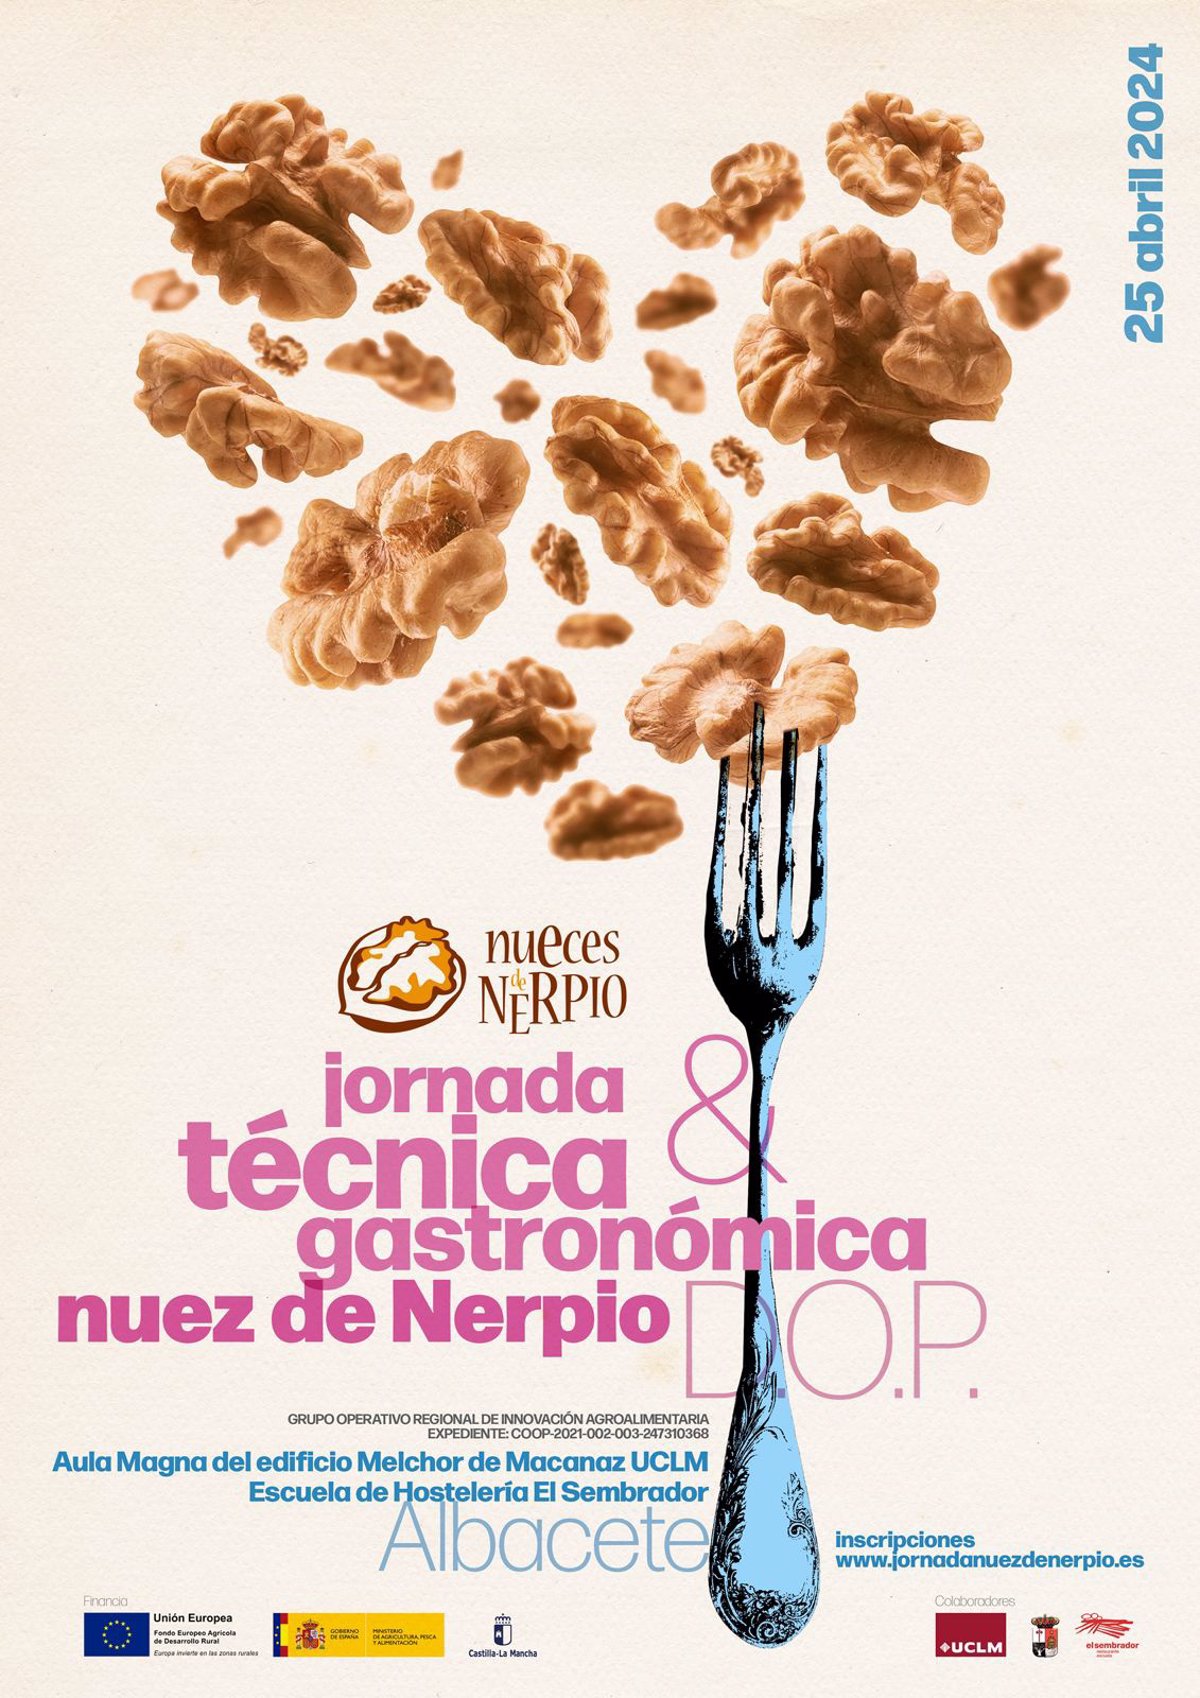 La Asociación de Nueces de Nerpio y la UCLM organizan unas jornadas gastronómicas esta semana en Albacete